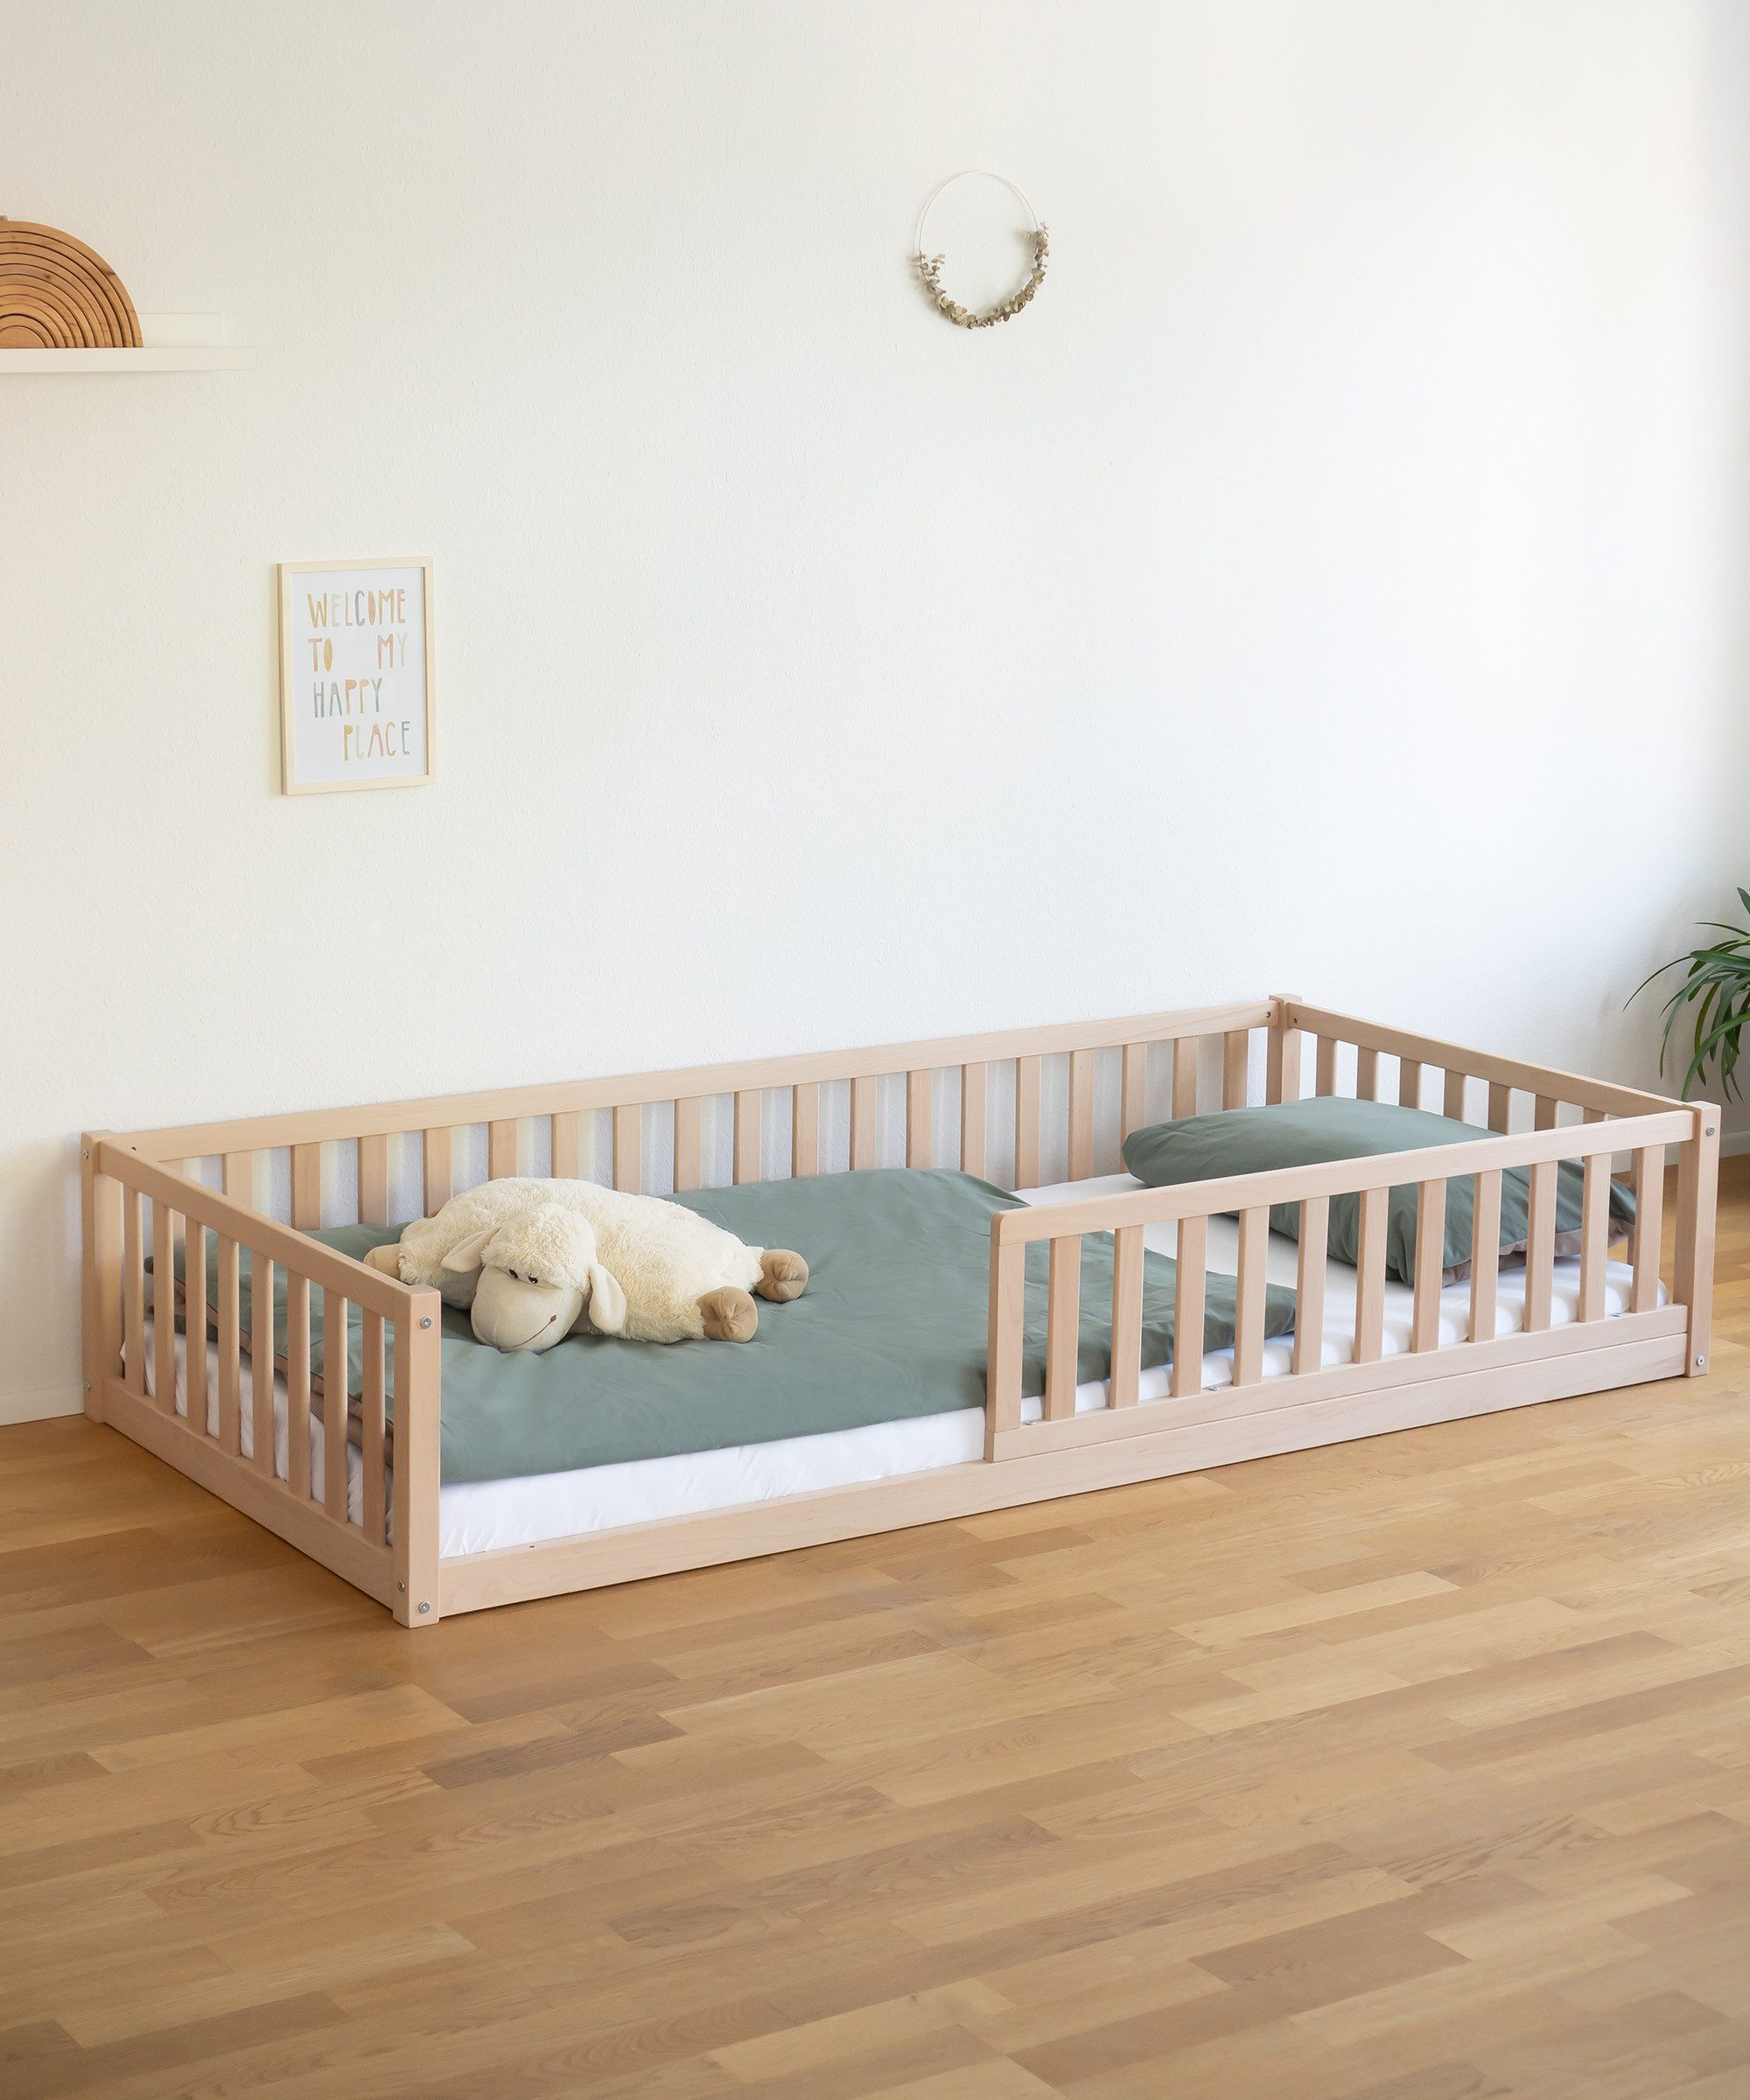 Ehrenkind Kinderbett Bodenbett in Buche FSC® zertifizert mit Rausfallschutz (Montessori Bett, Jugendbett, Bodenbett 90x200 cm), in verschiedenen Ausführungen